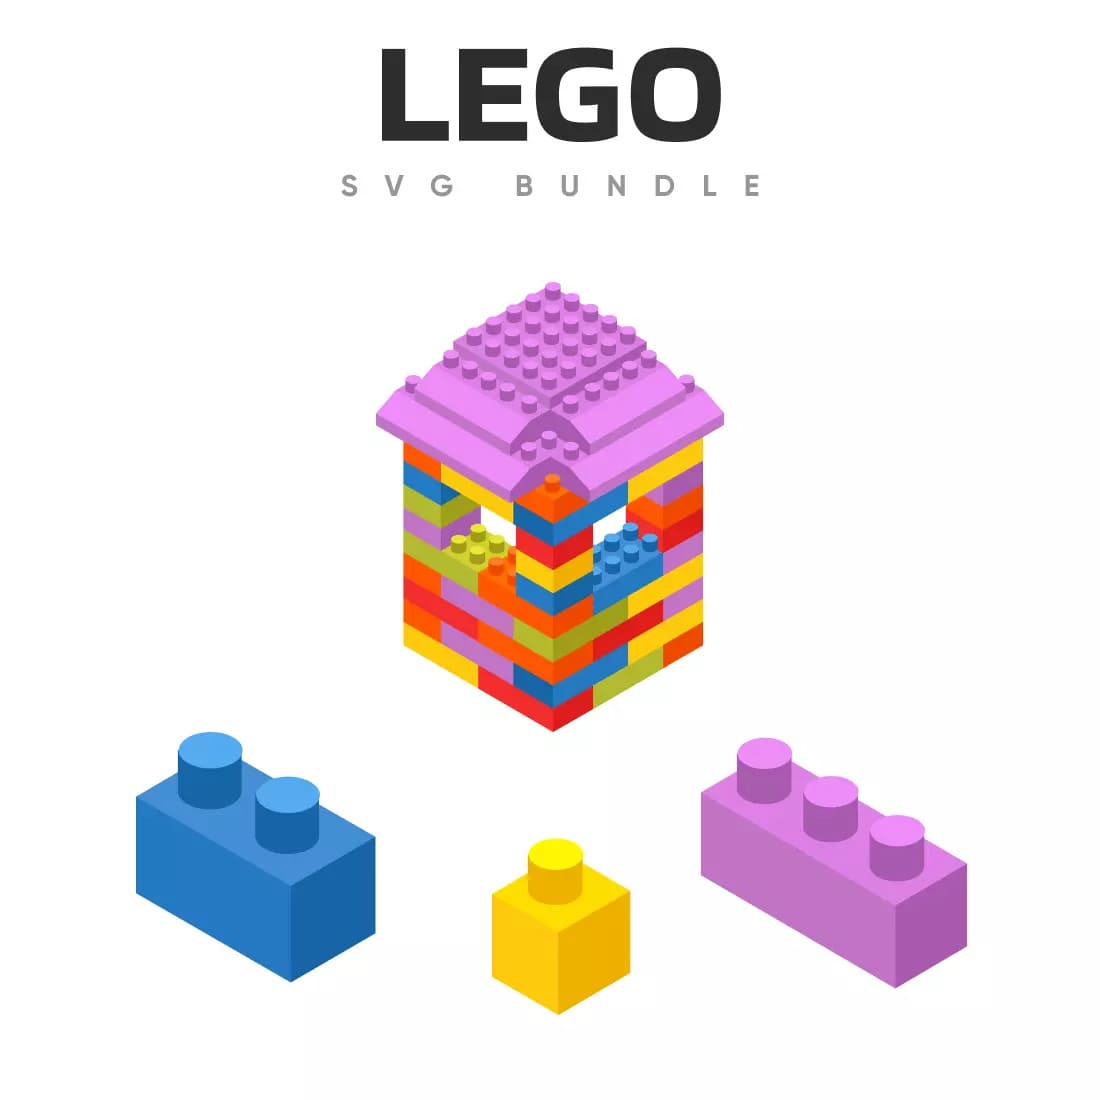 Lego SVG Bundle Preview.